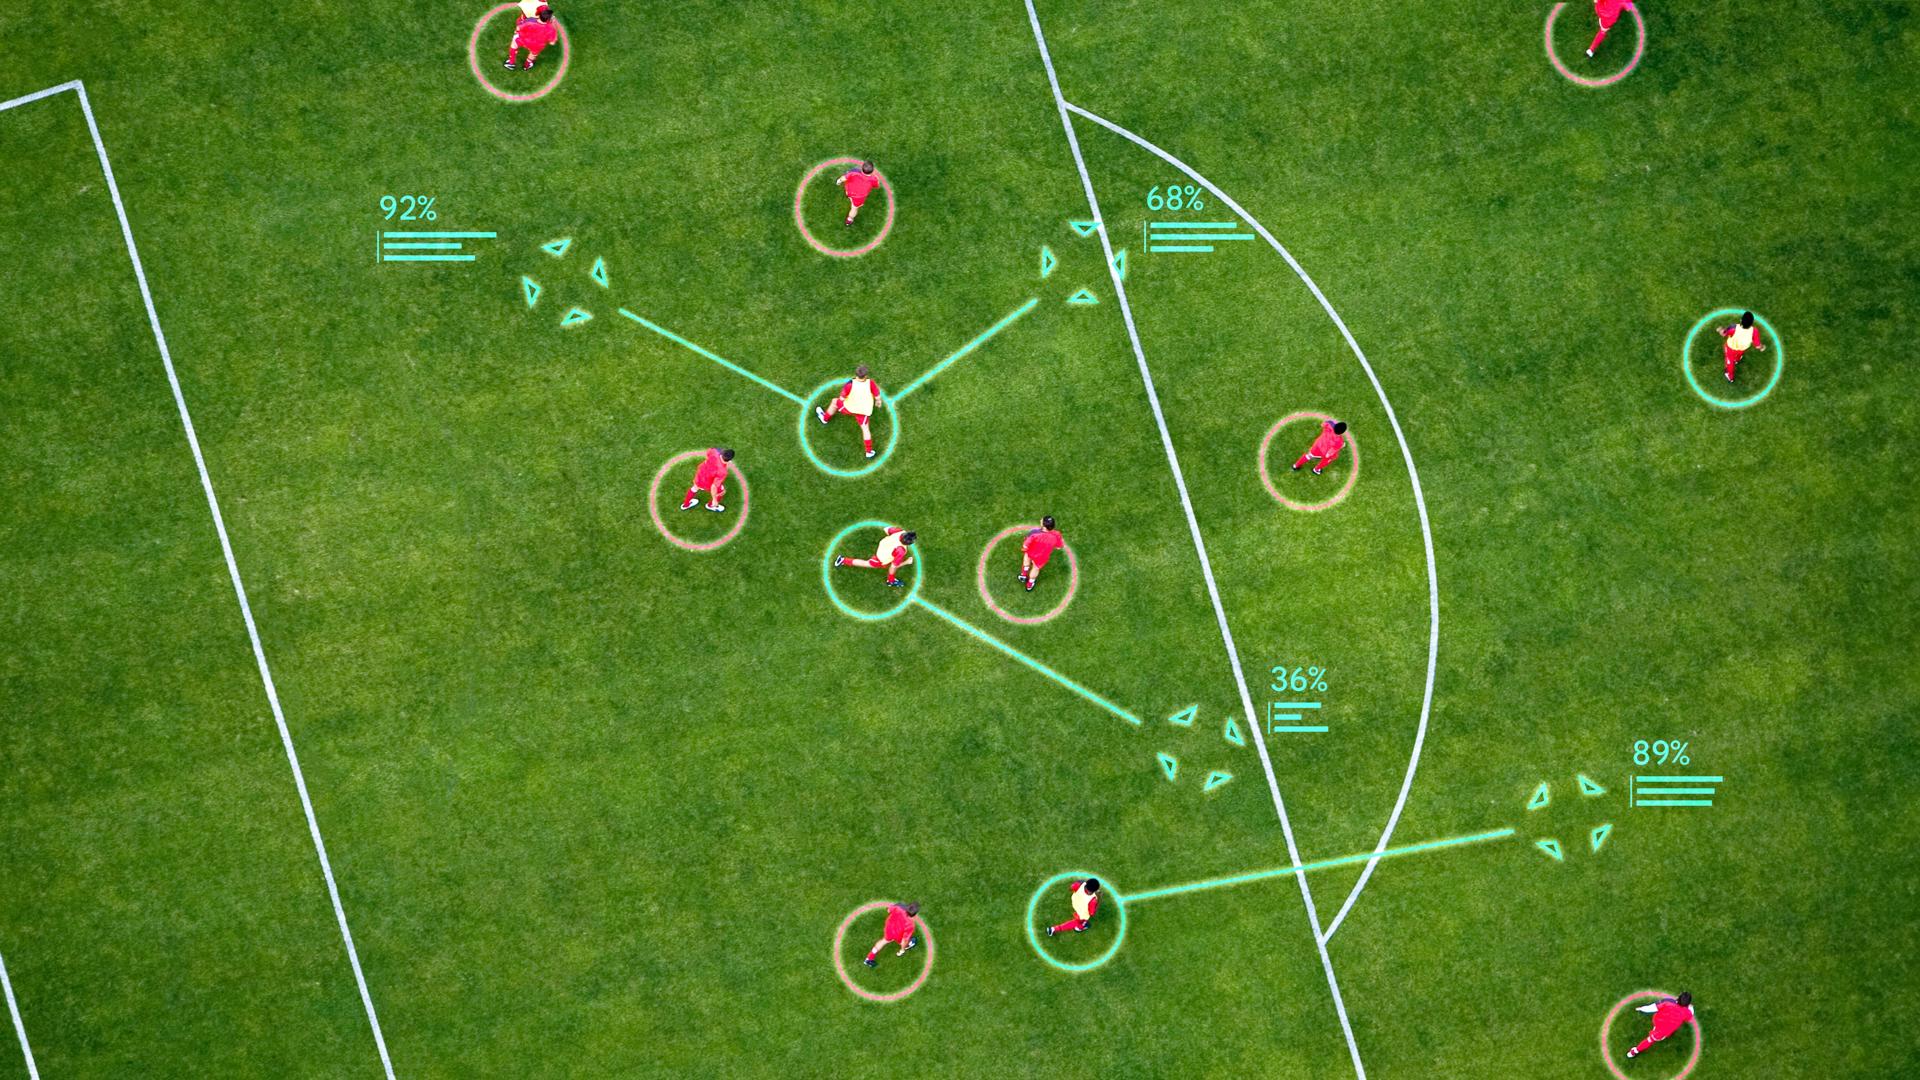 Ilustración de cómo TacticAI podría integrarse en el proceso de desarrollo de tácticas de fútbol en el mundo real. Crédito: Google DeepMind.